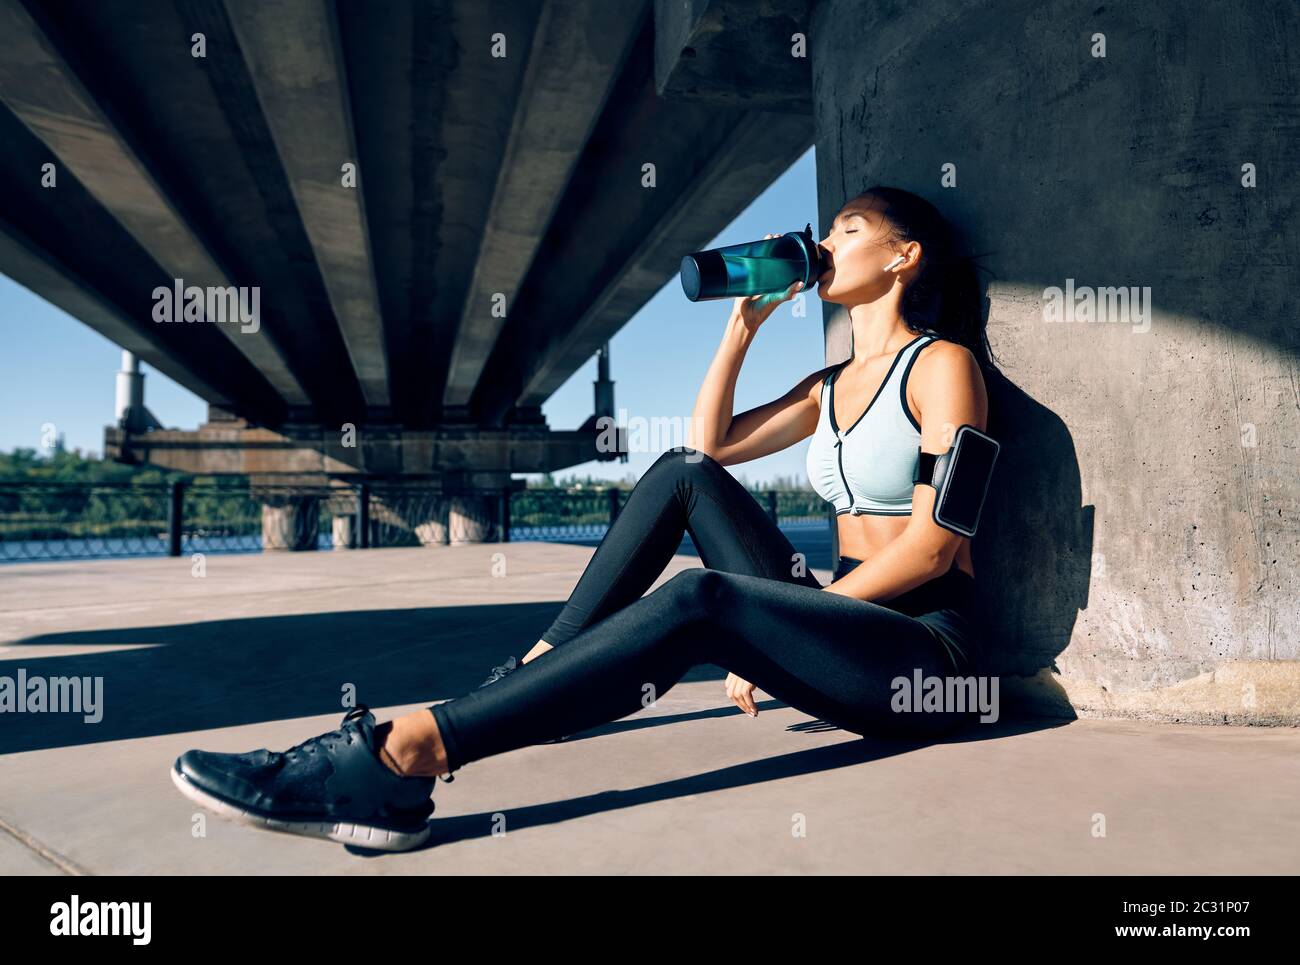 Junge Fitness Frau Trinkwasser aus der Flasche Stockfotografie - Alamy